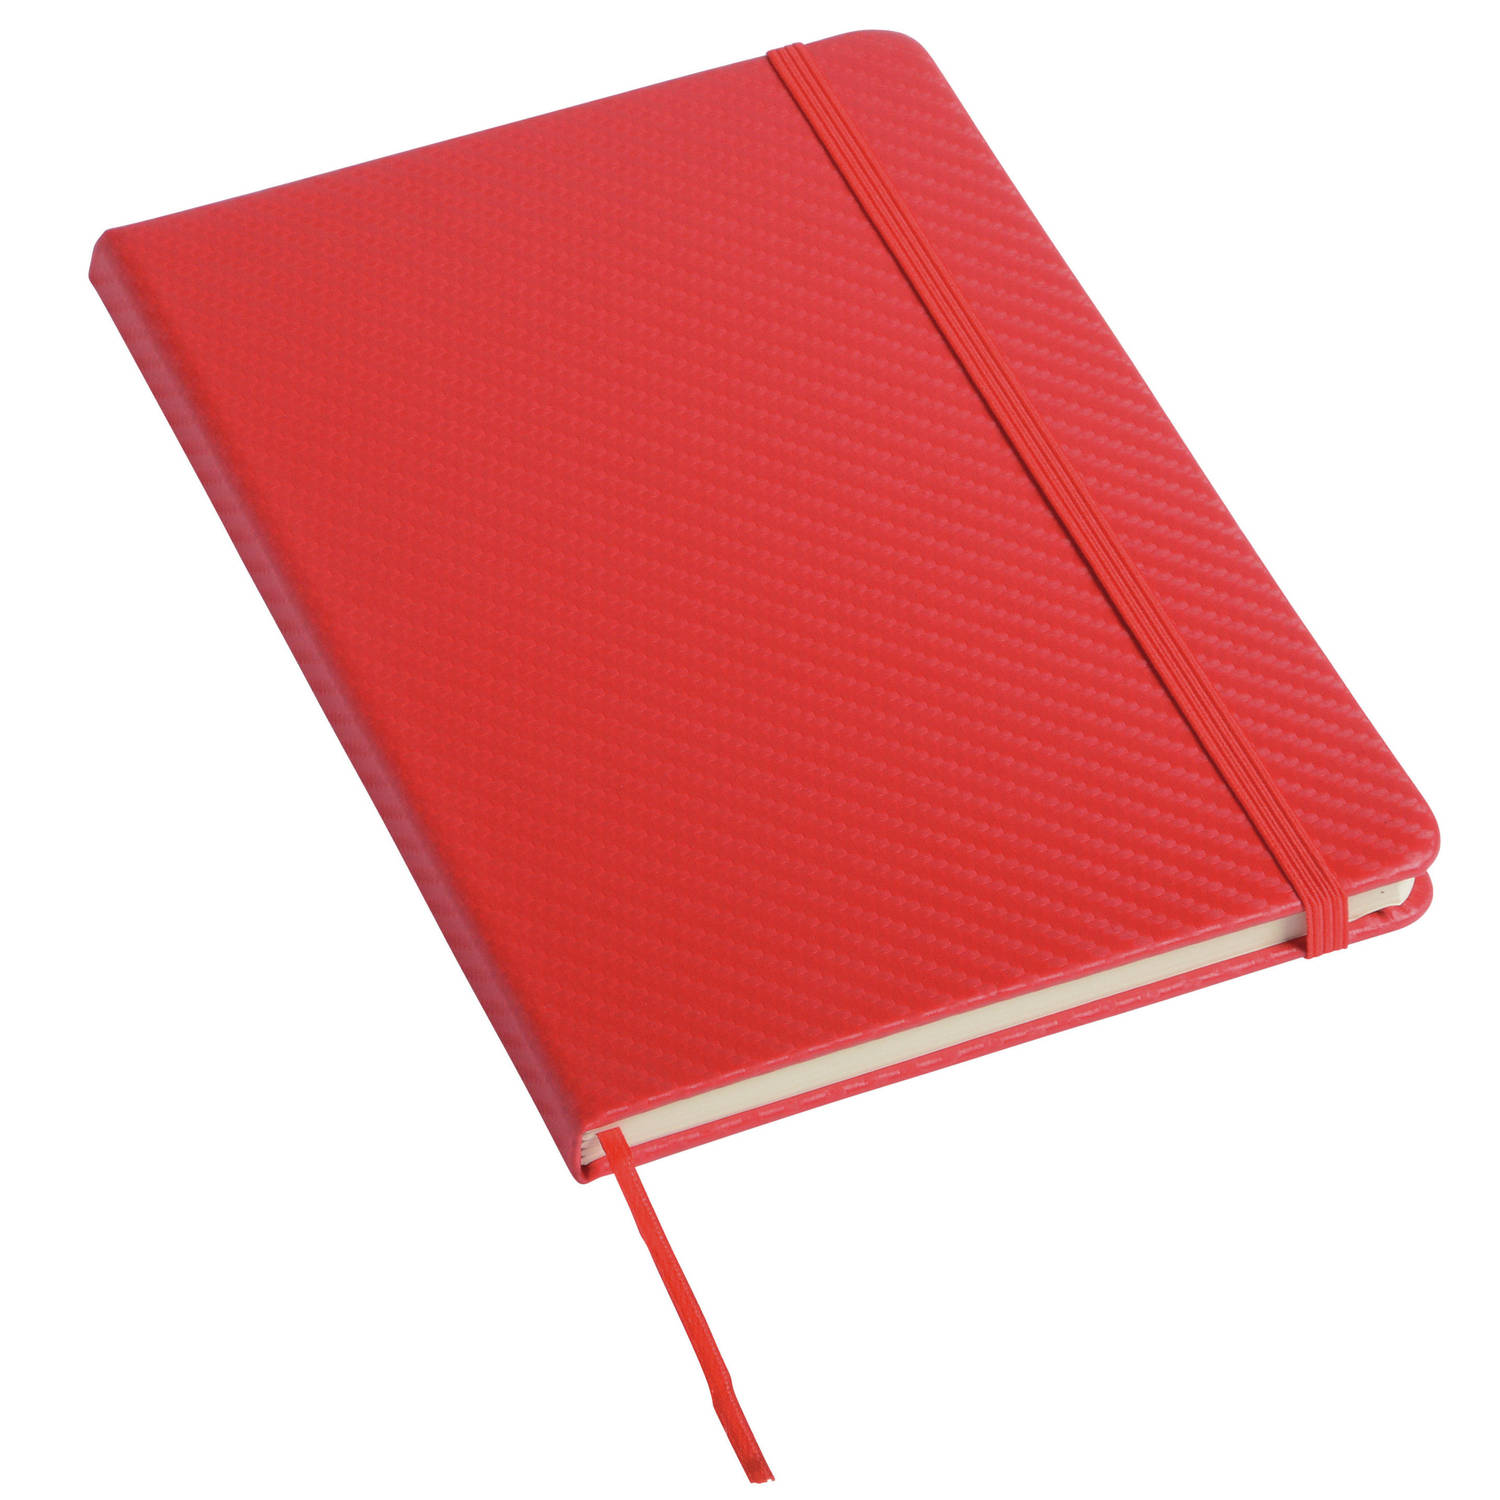 Pakket van 1x stuks schoolschriften/notitieboeken A5 gelinieerd harde kaft - rood - Met sluitband en bladwijzer